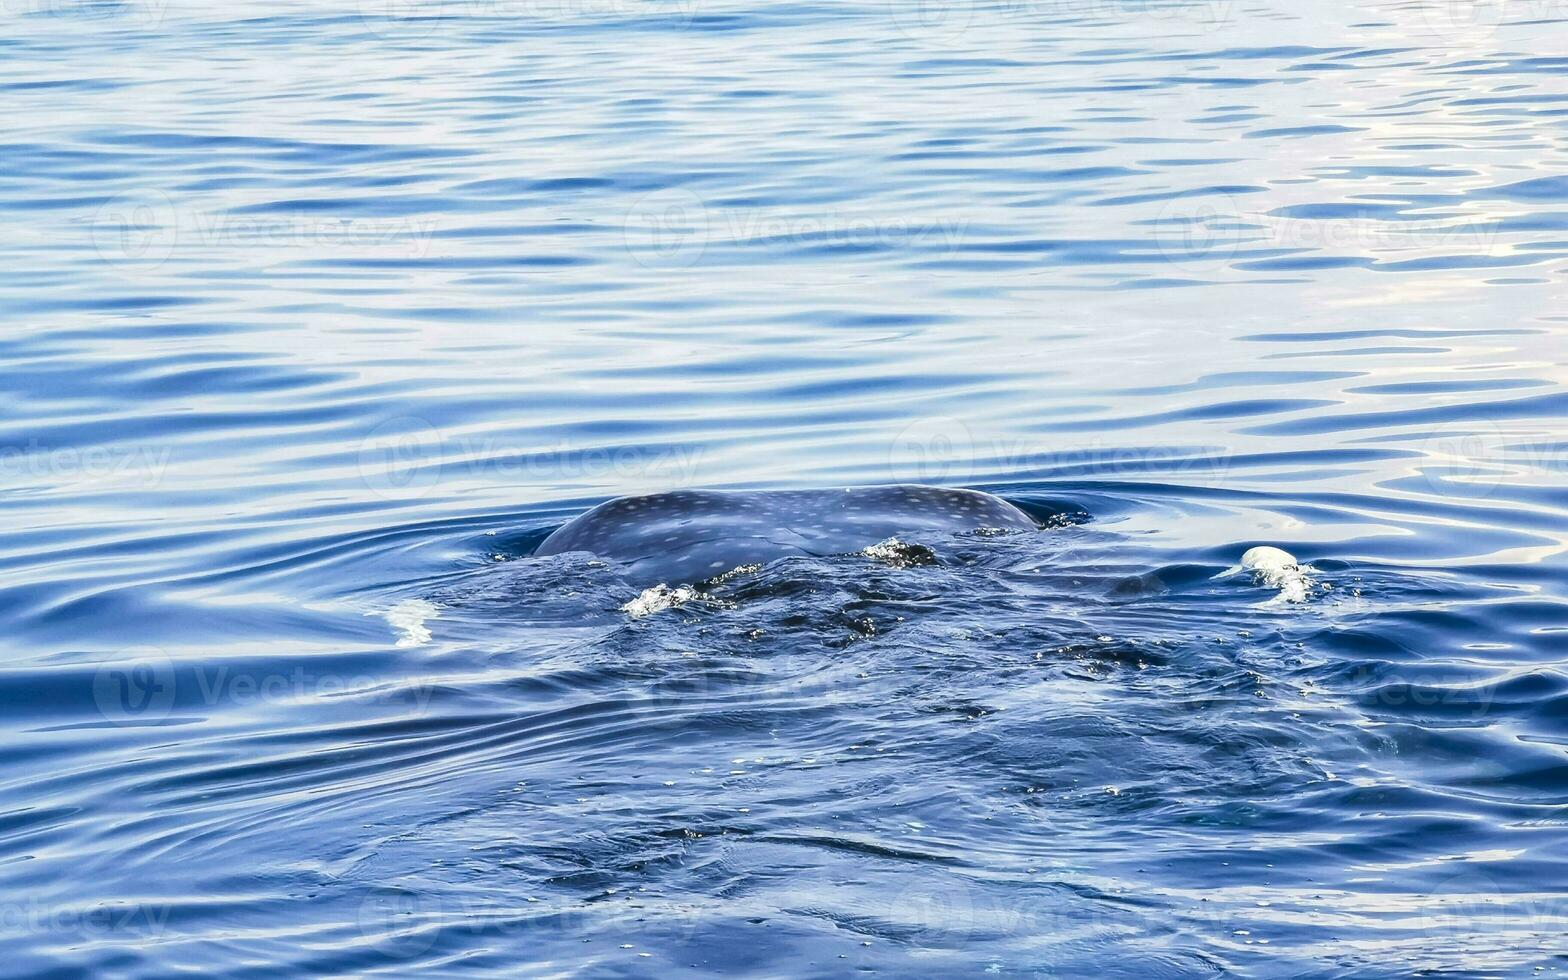 enorme tubarão-baleia nada na superfície da água cancun méxico. foto